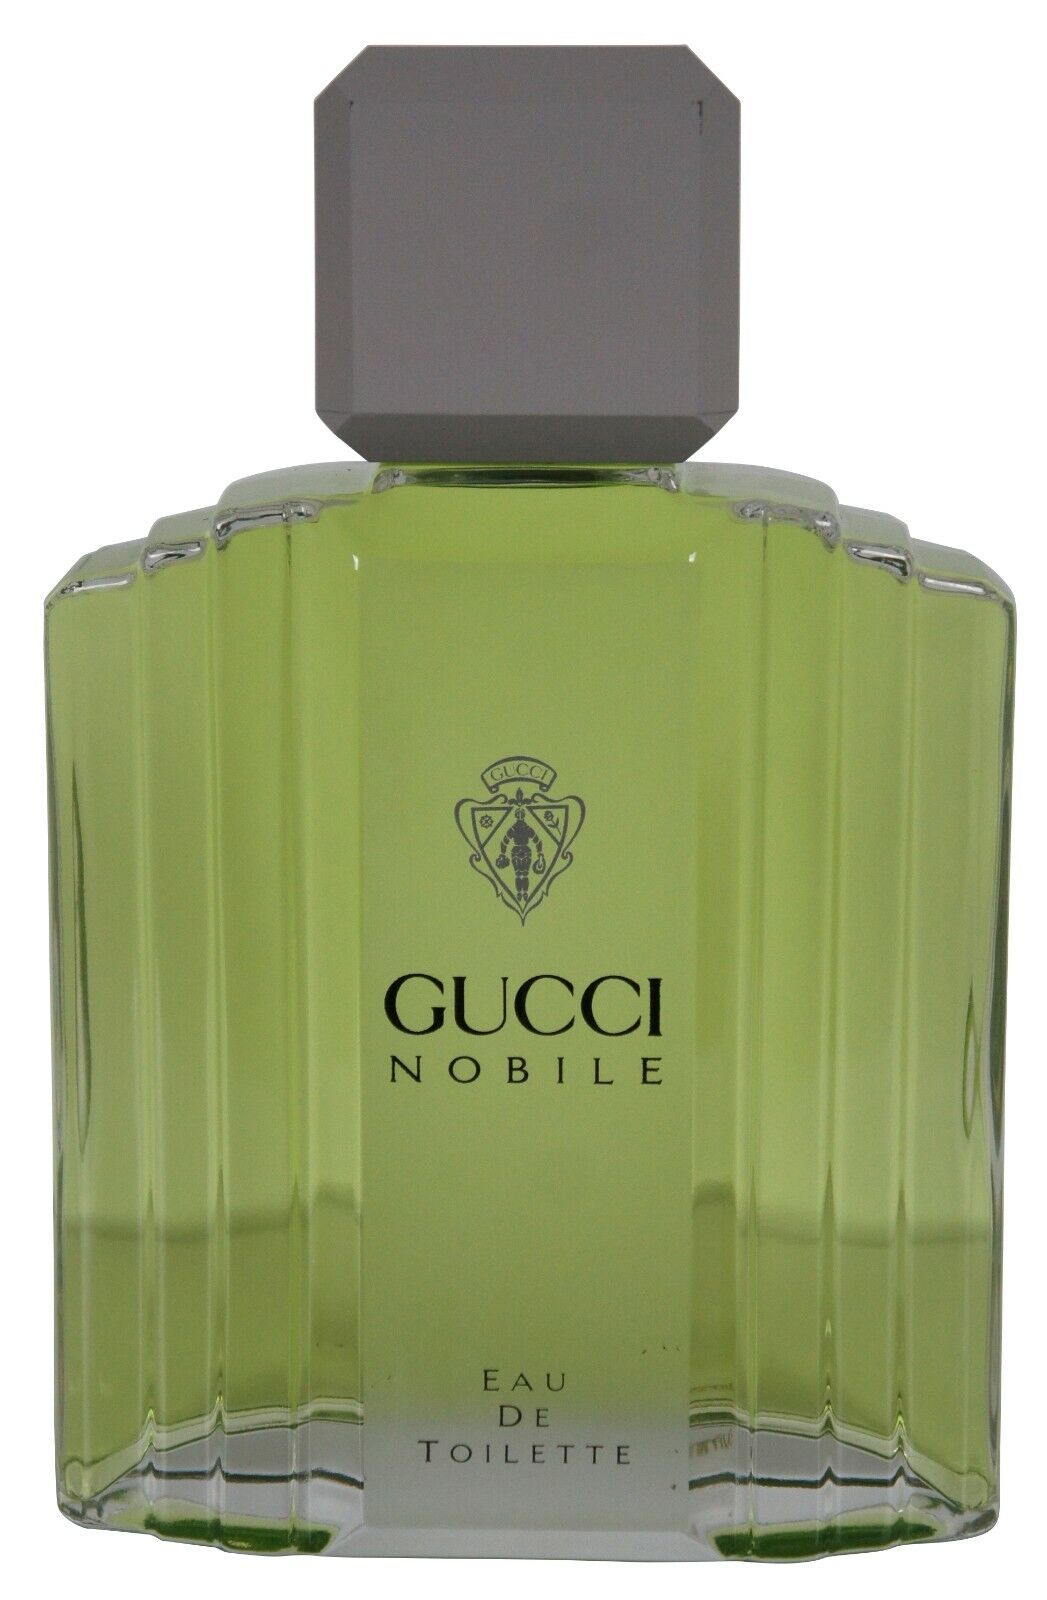 Gucci Nobile Eau Toilette Factice Dummy Cologne Perfume Bottle Store Display 11\